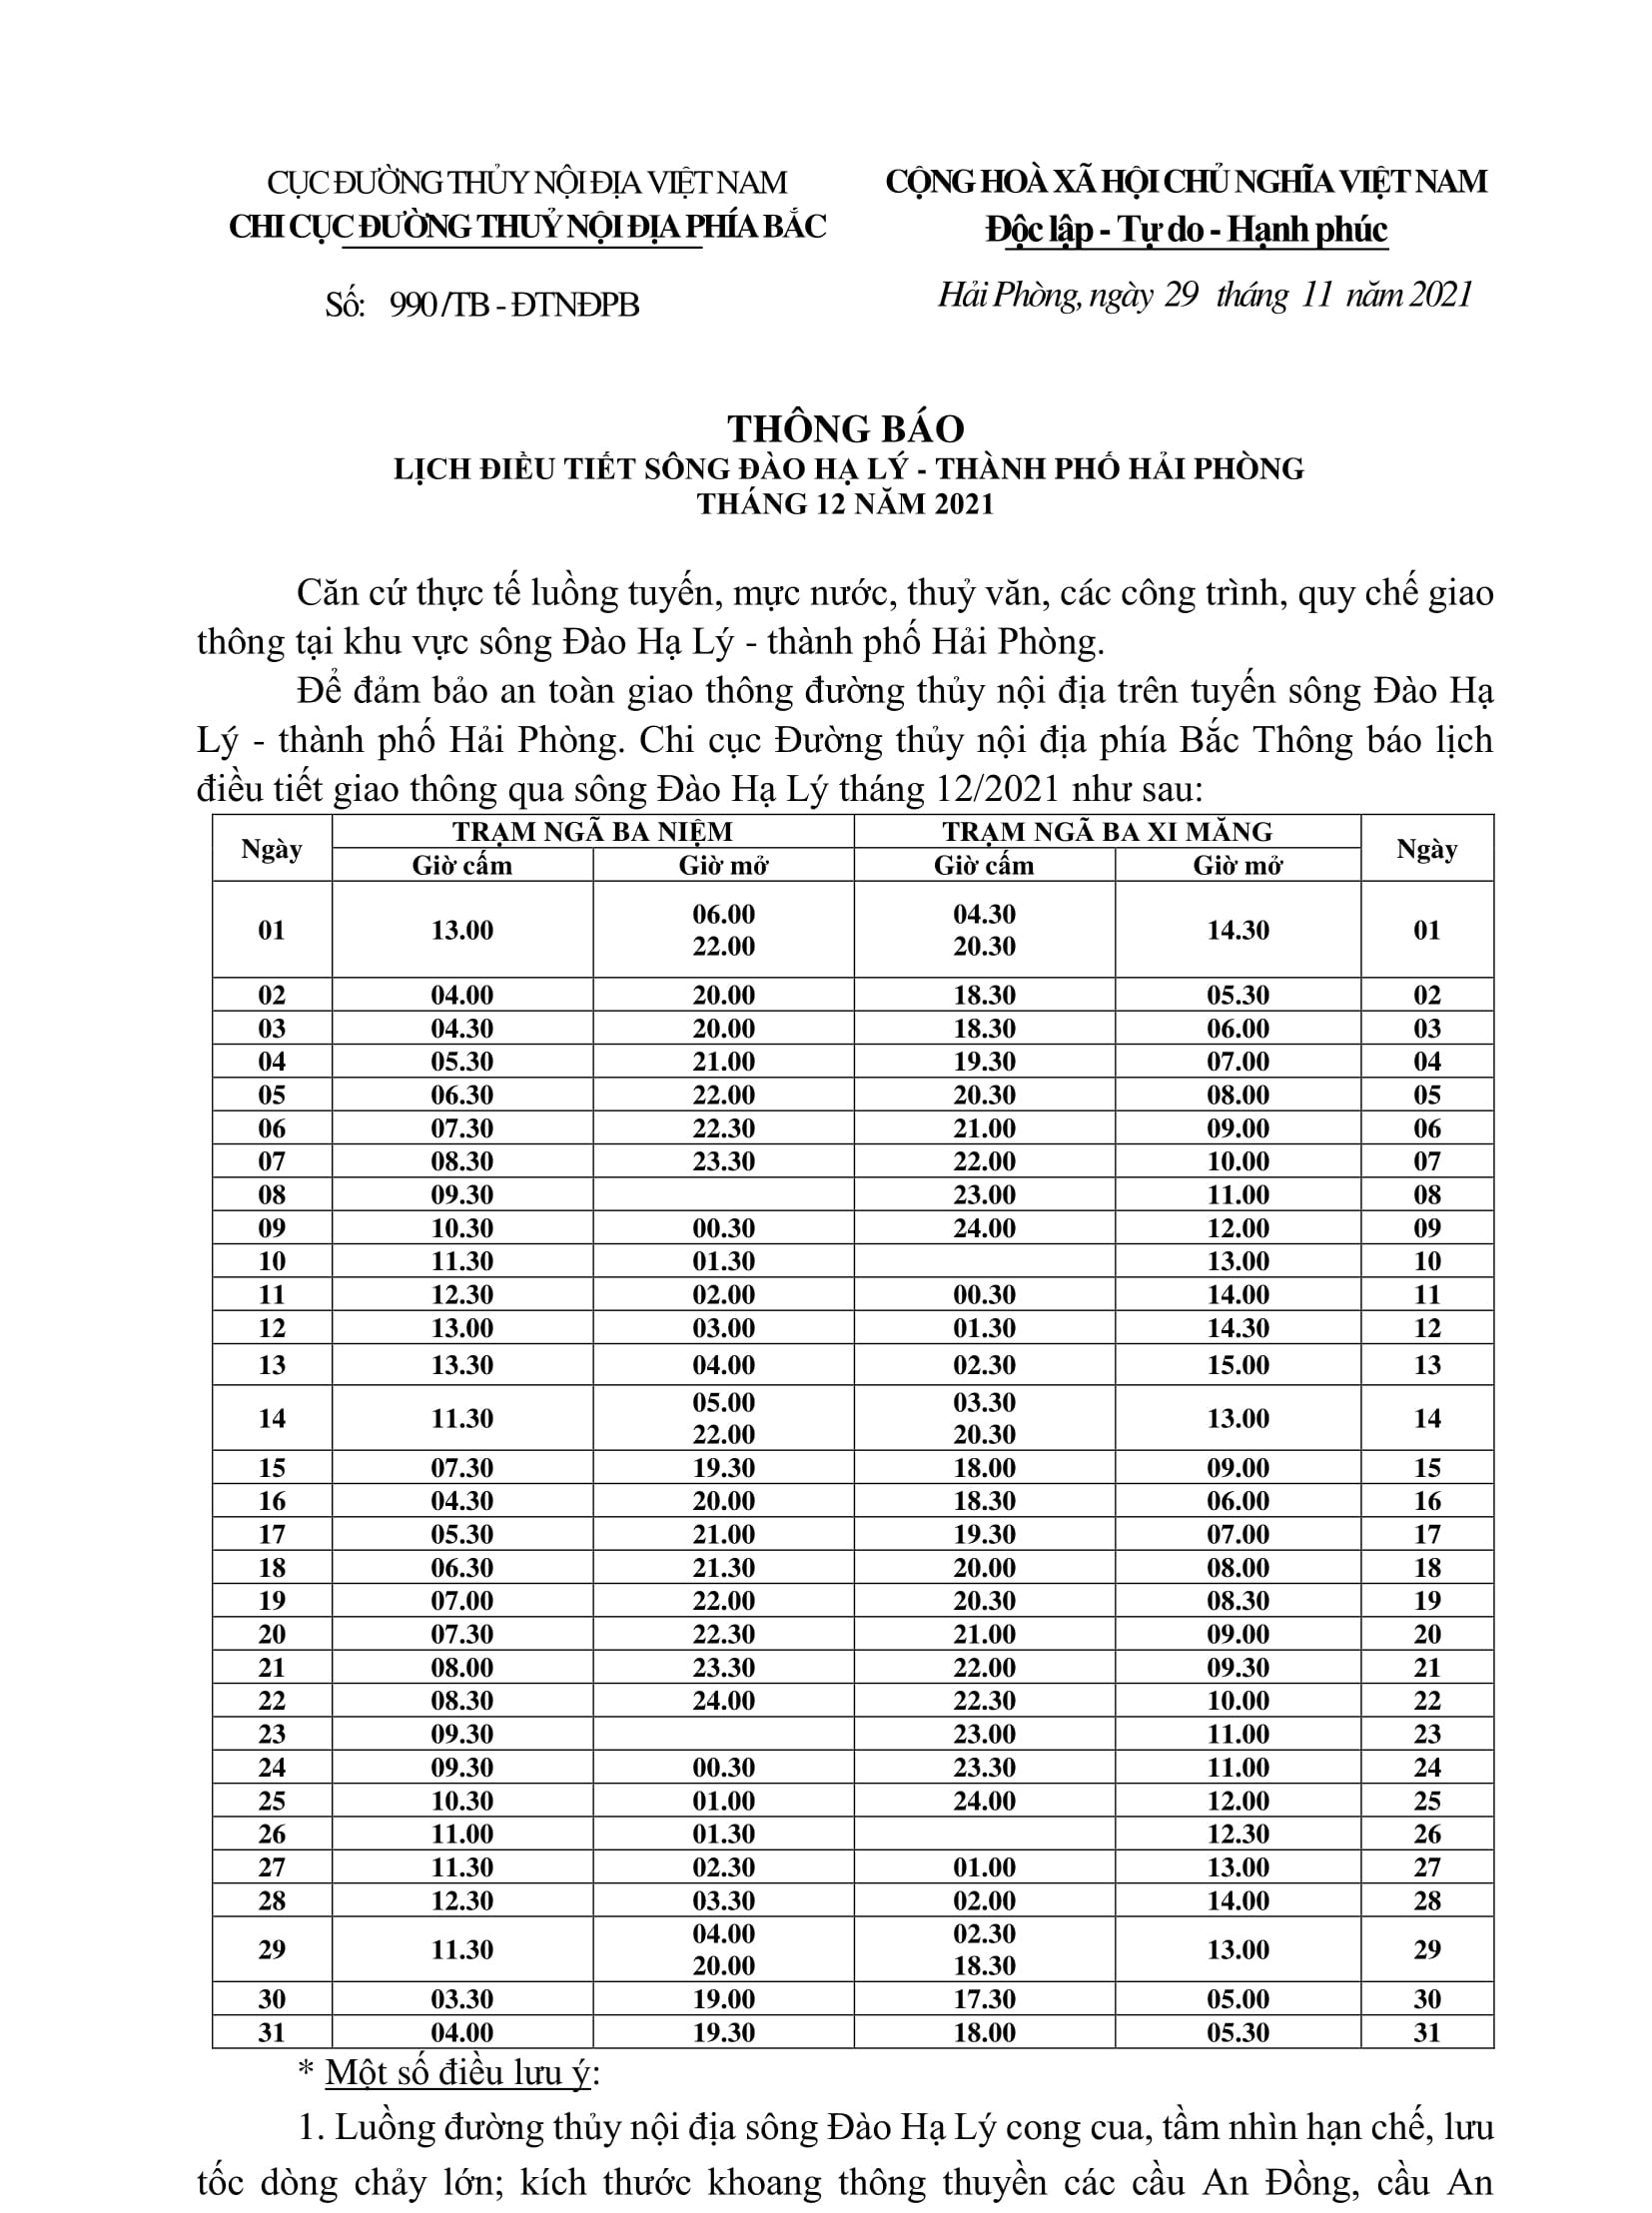 Thông báo điều chỉnh lịch điều tiết sông Đào Hạ Lý - TP Hải Phòng tháng 12/2021